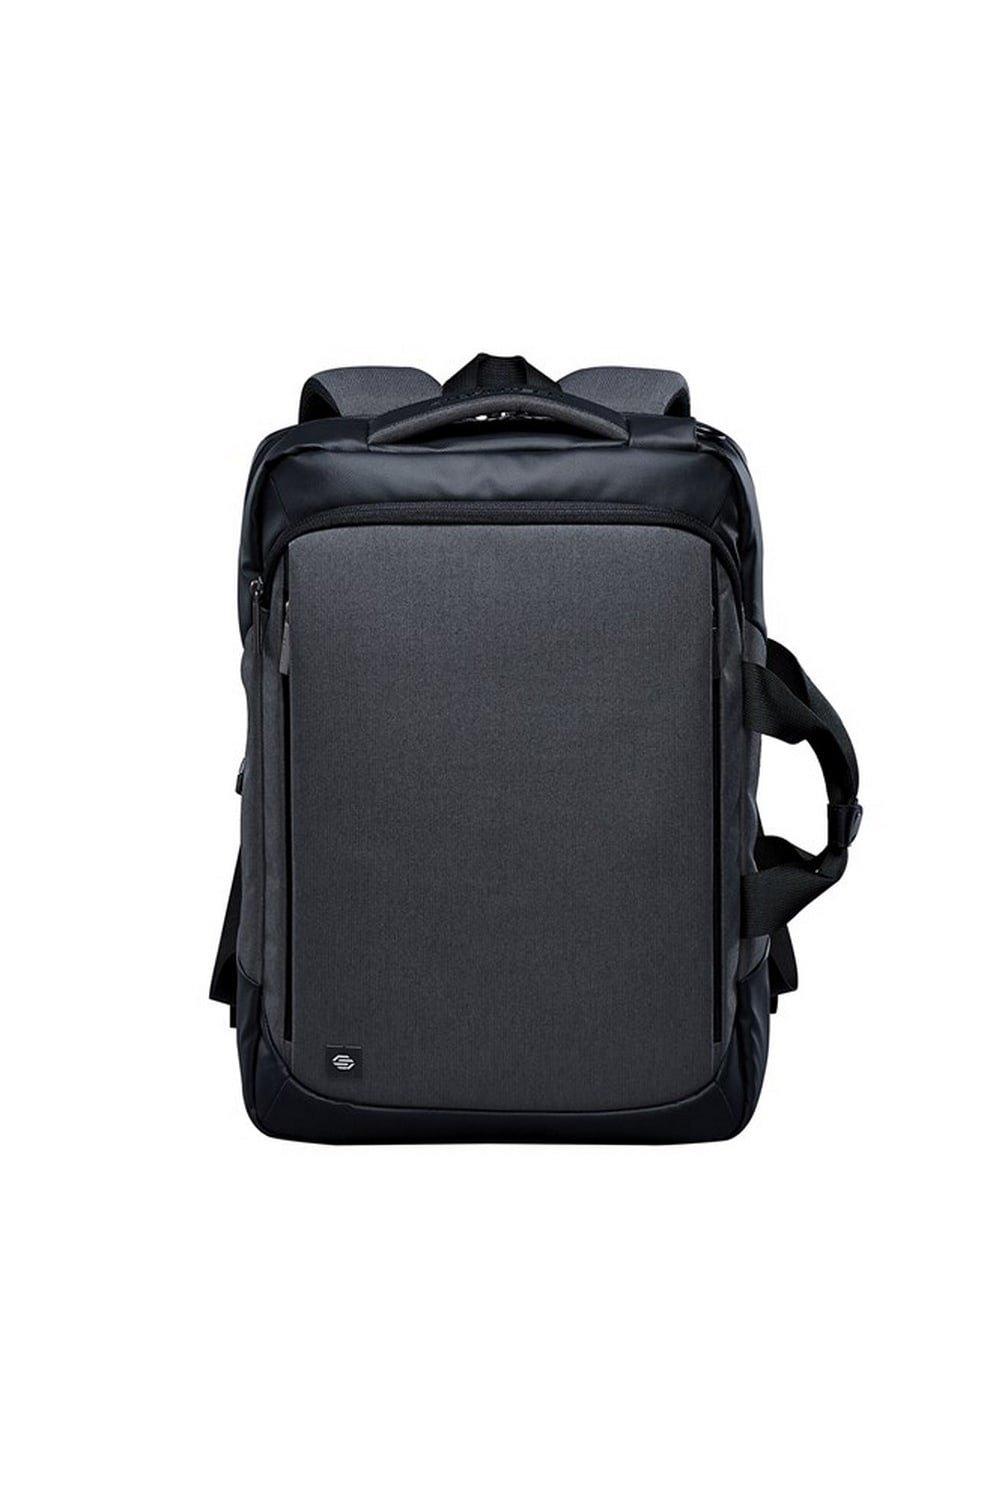 Рюкзак для ноутбука Road Warrior Stormtech, серый